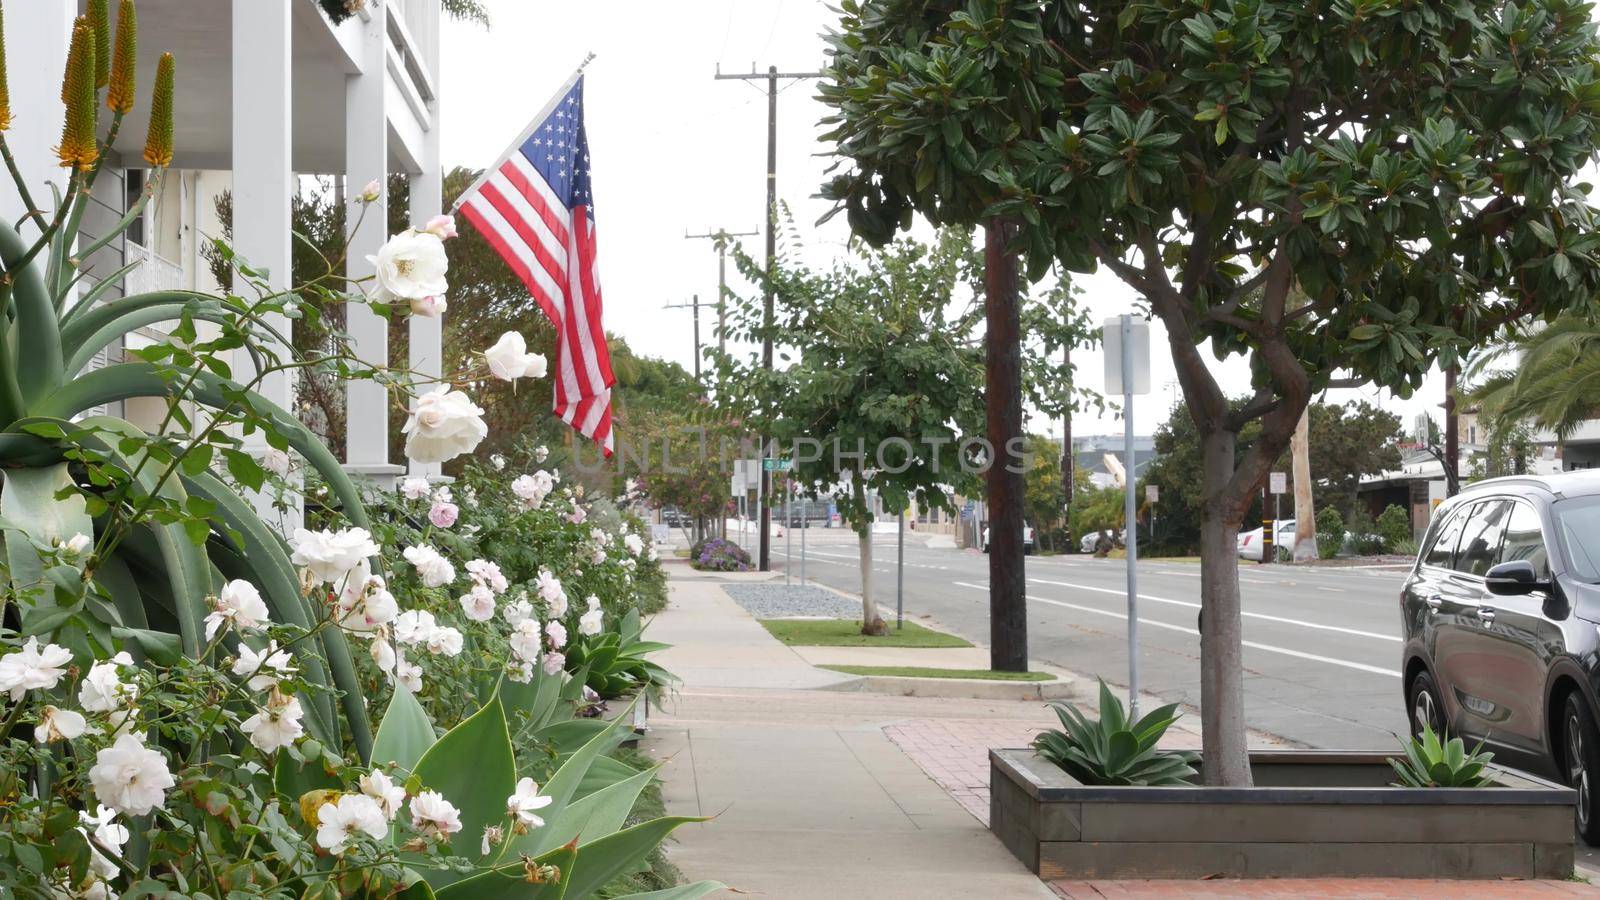 American flag waving, suburban house facade residential district, California USA by DogoraSun